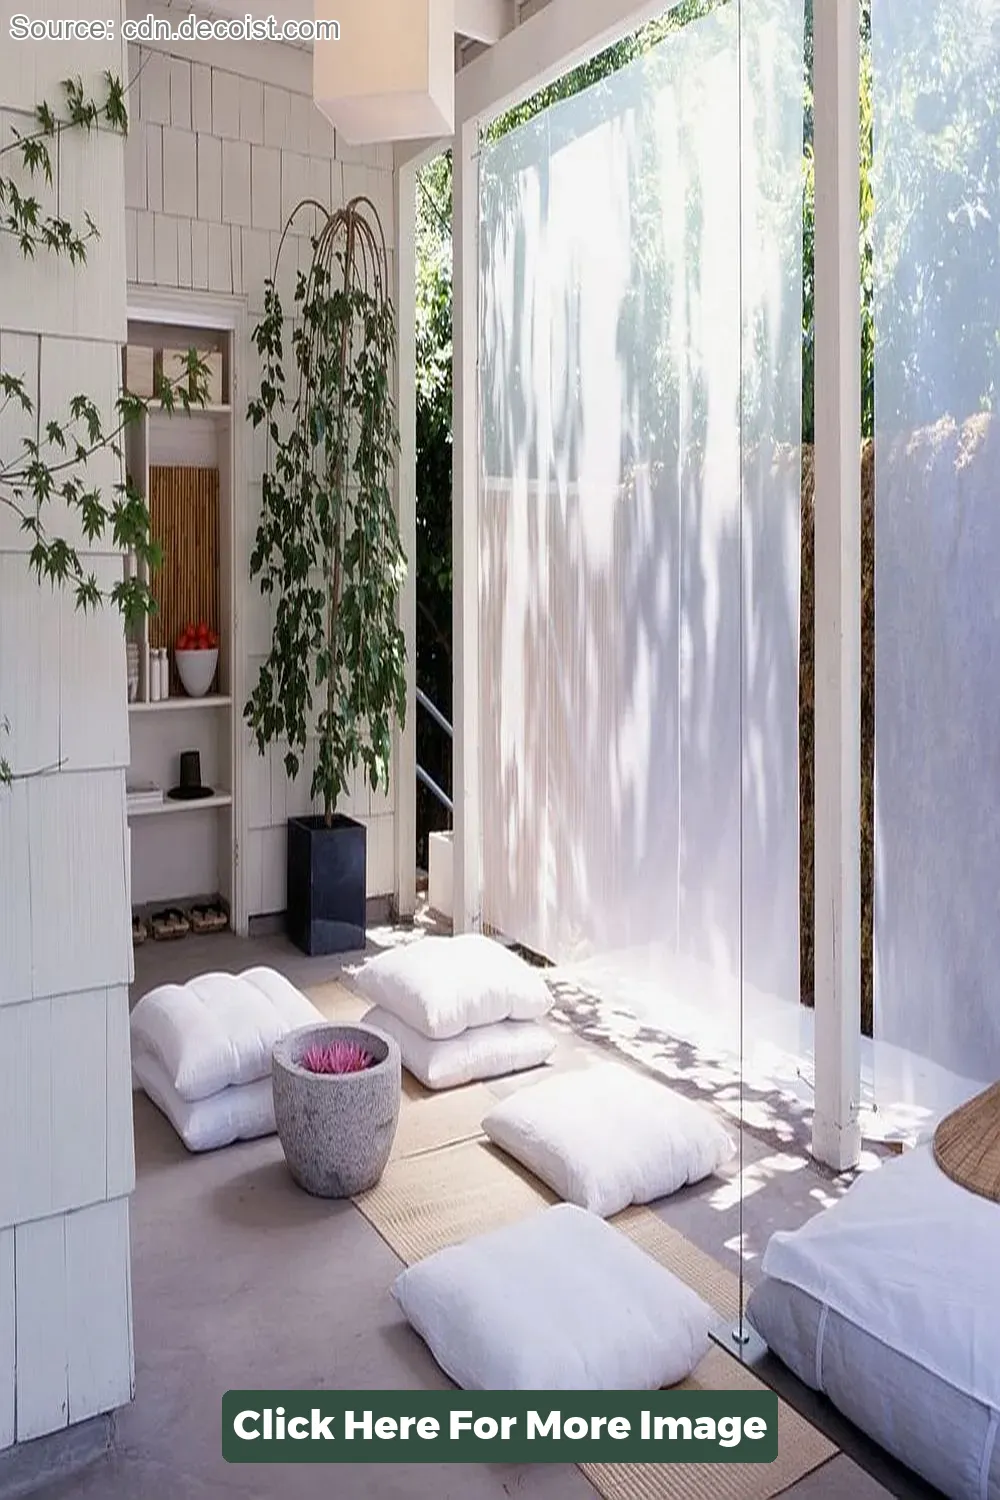 Top 40 Zen Room Design Small Spaces - CivilDetail